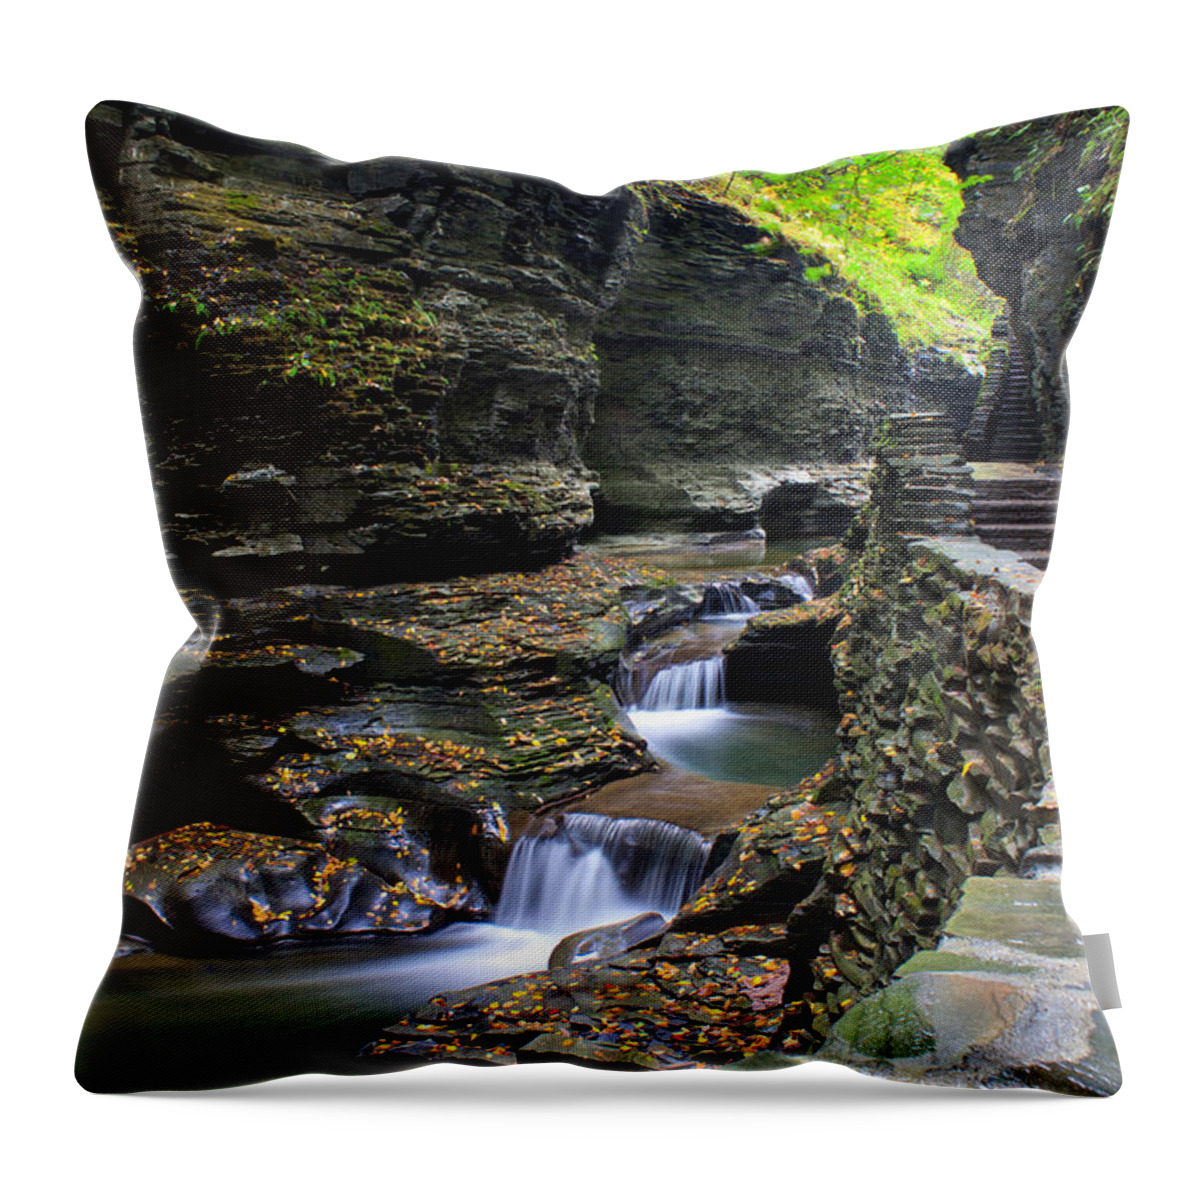 Nunweiler Throw Pillow featuring the photograph Watkins Glen by Nunweiler Photography